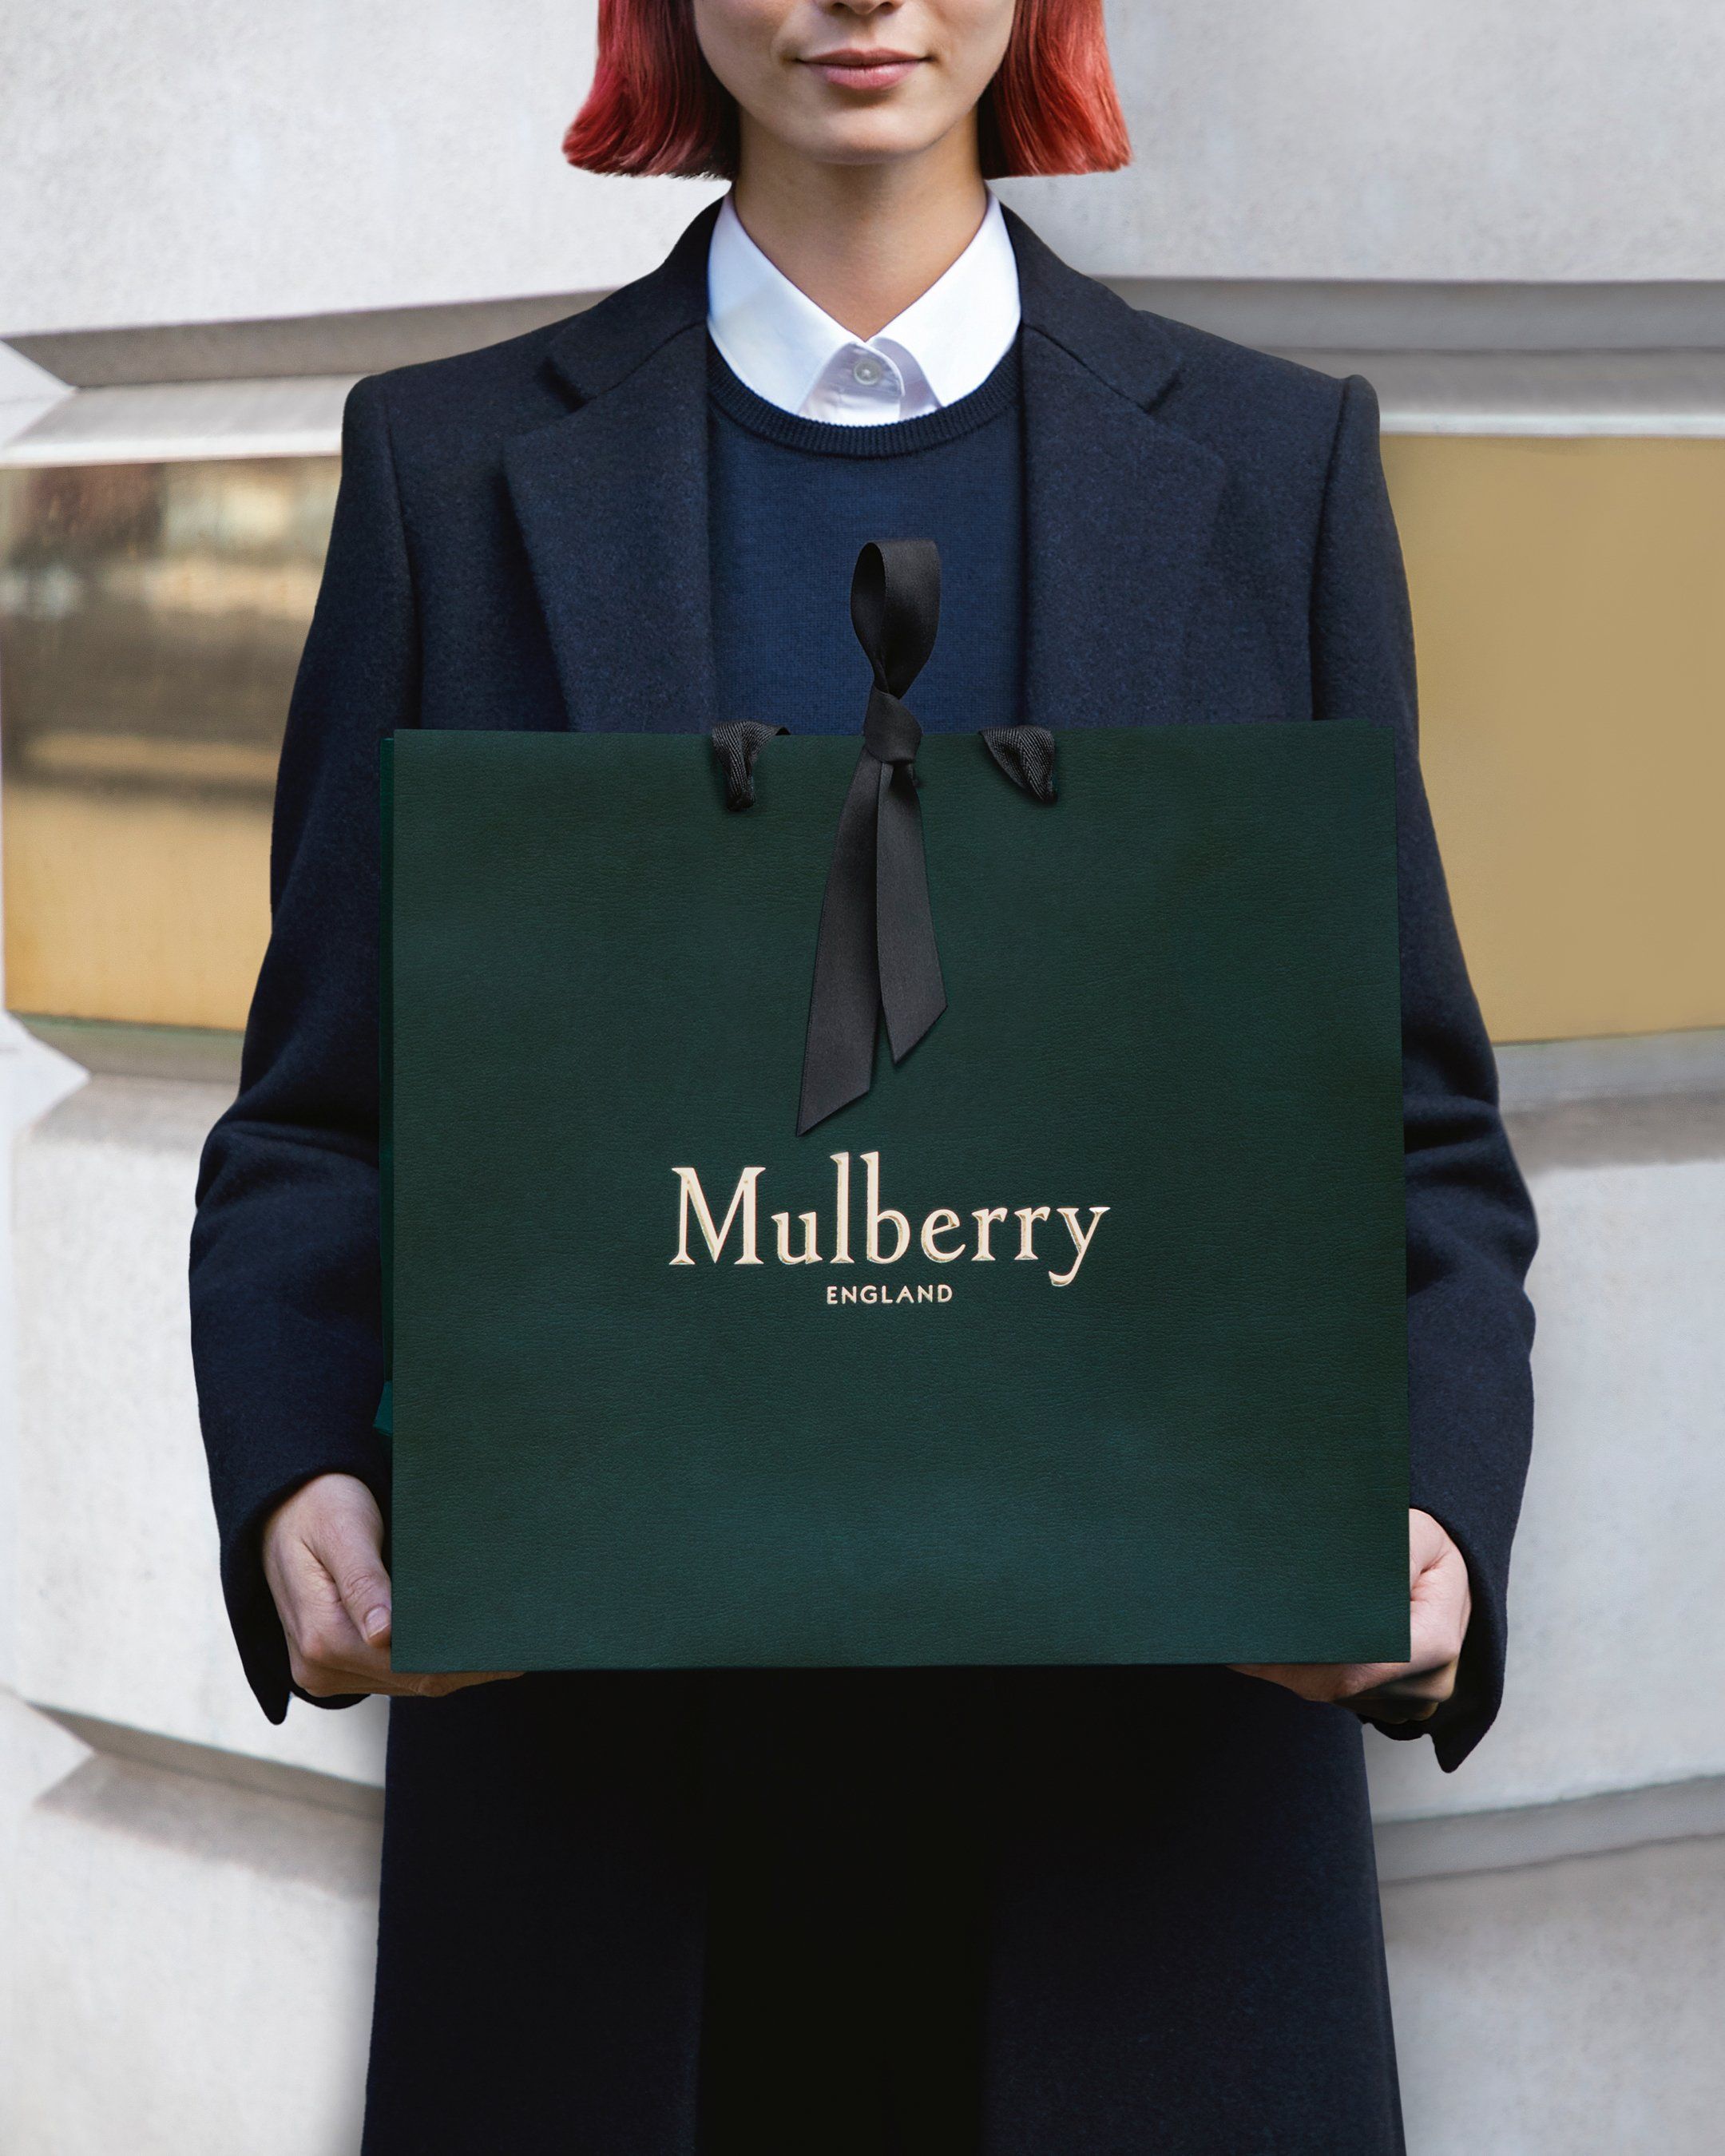 Mulberry logo  Mulberry logo, Mulberry, ? logo